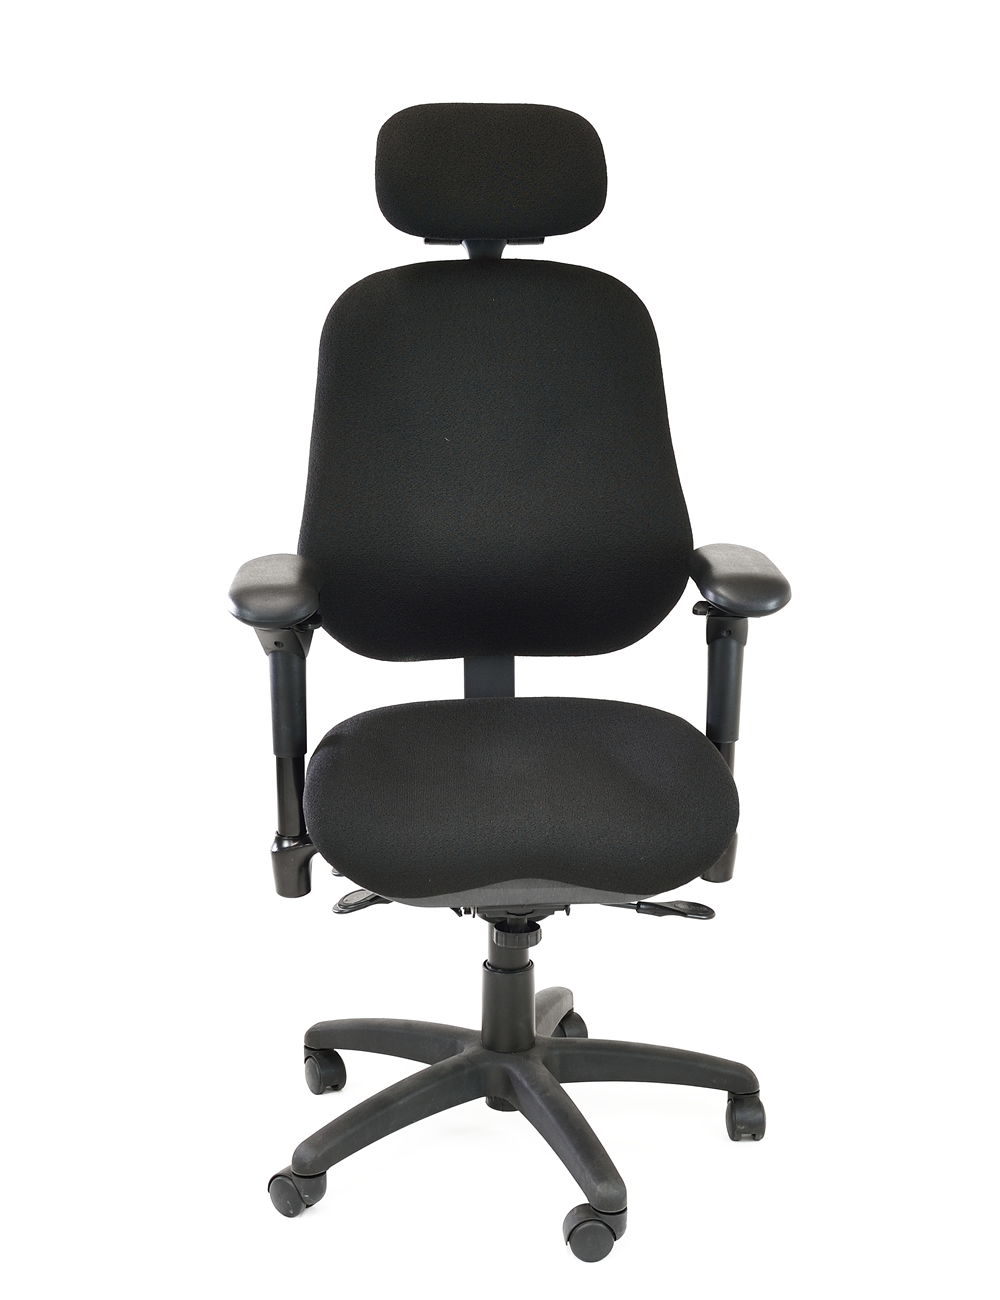 bodybilt j3407 heavy duty office chair